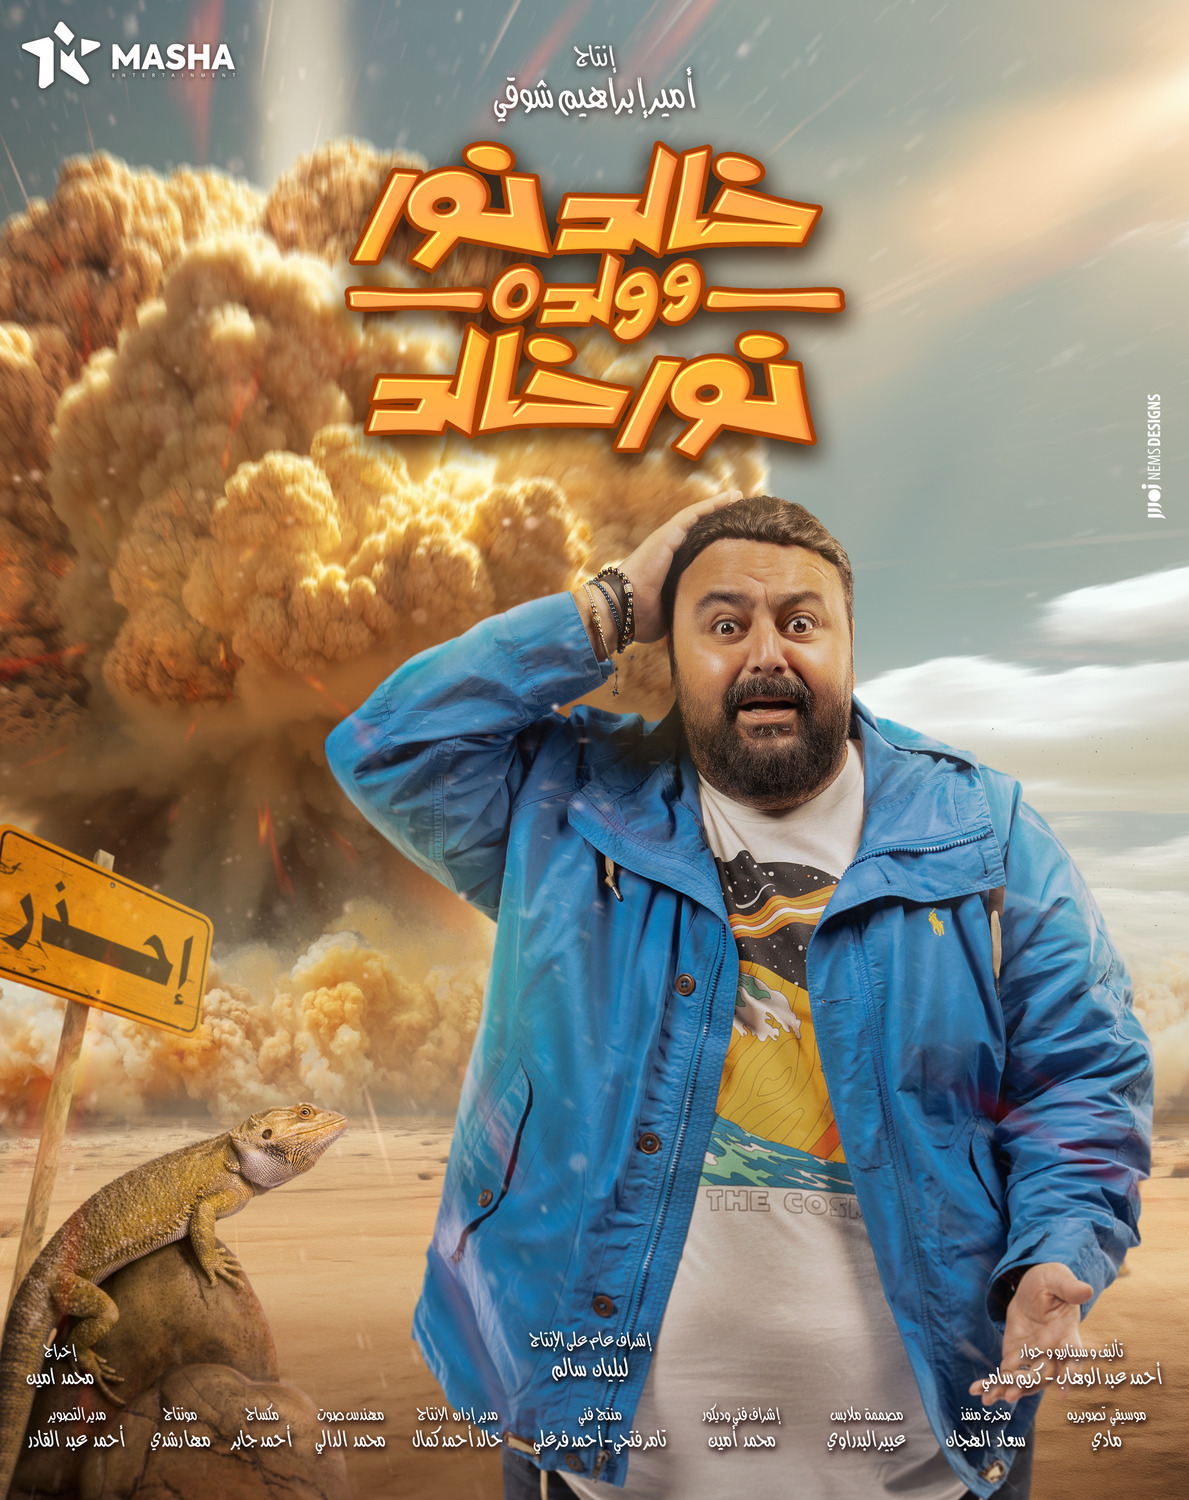 Extra Large TV Poster Image for Khaled Noor W Waldo Noor Khaled (#13 of 13)